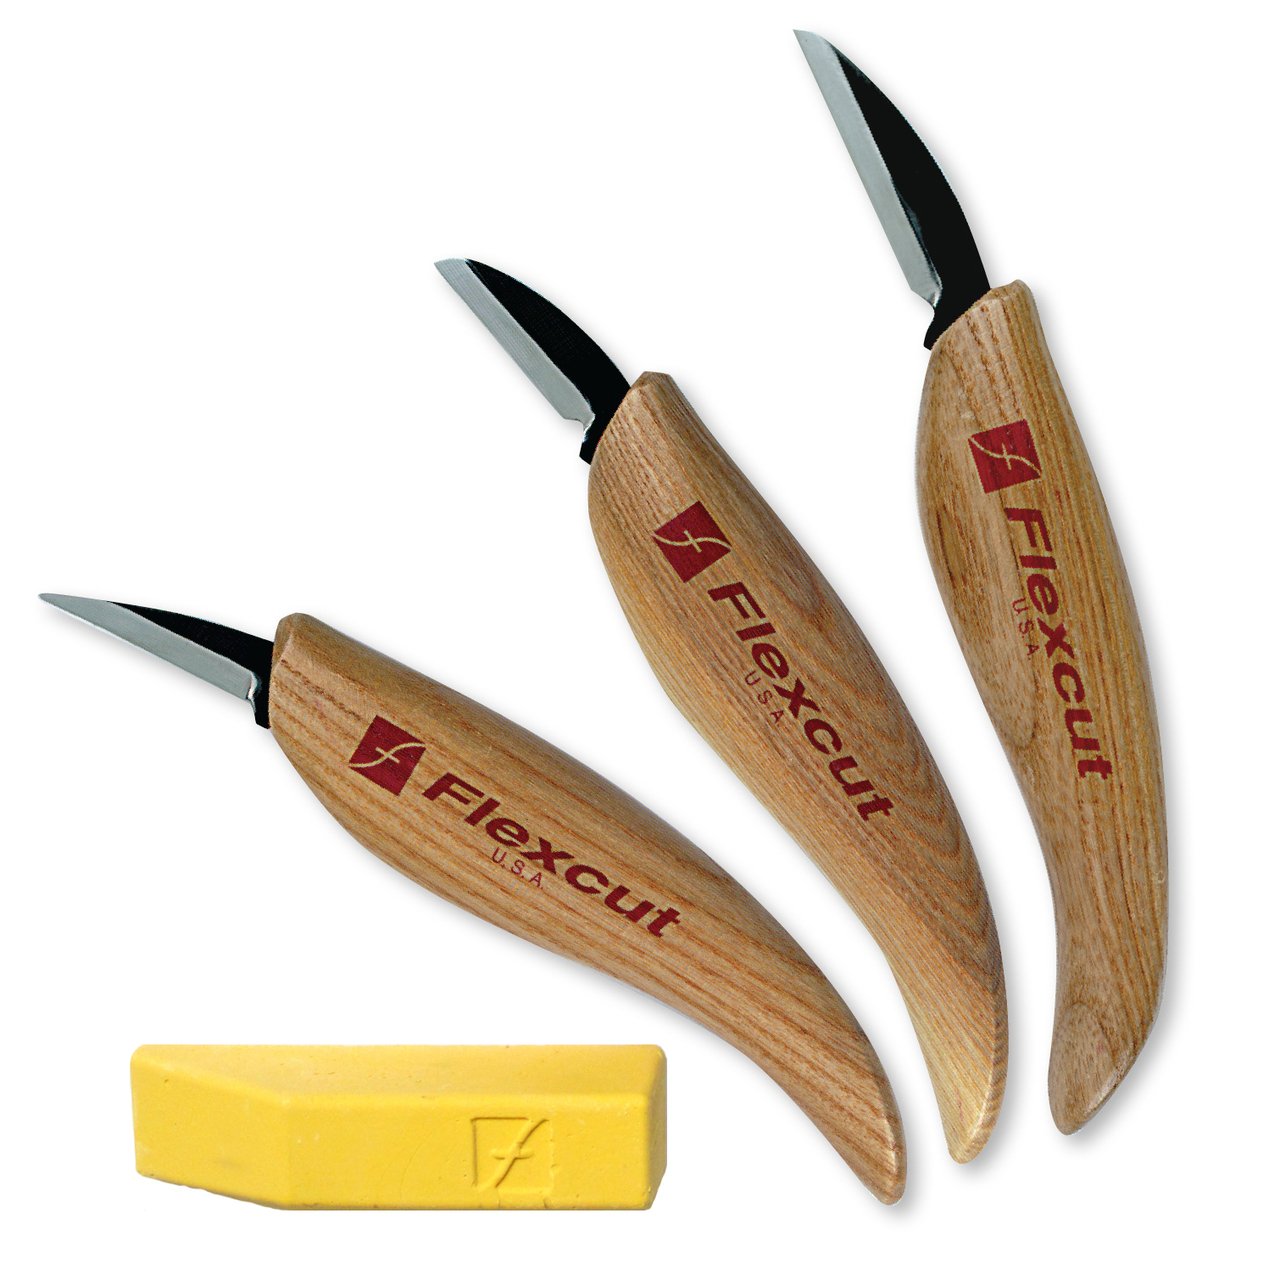 Flexcut Başlangıç Bıçak Seti 3 Parça + Cila